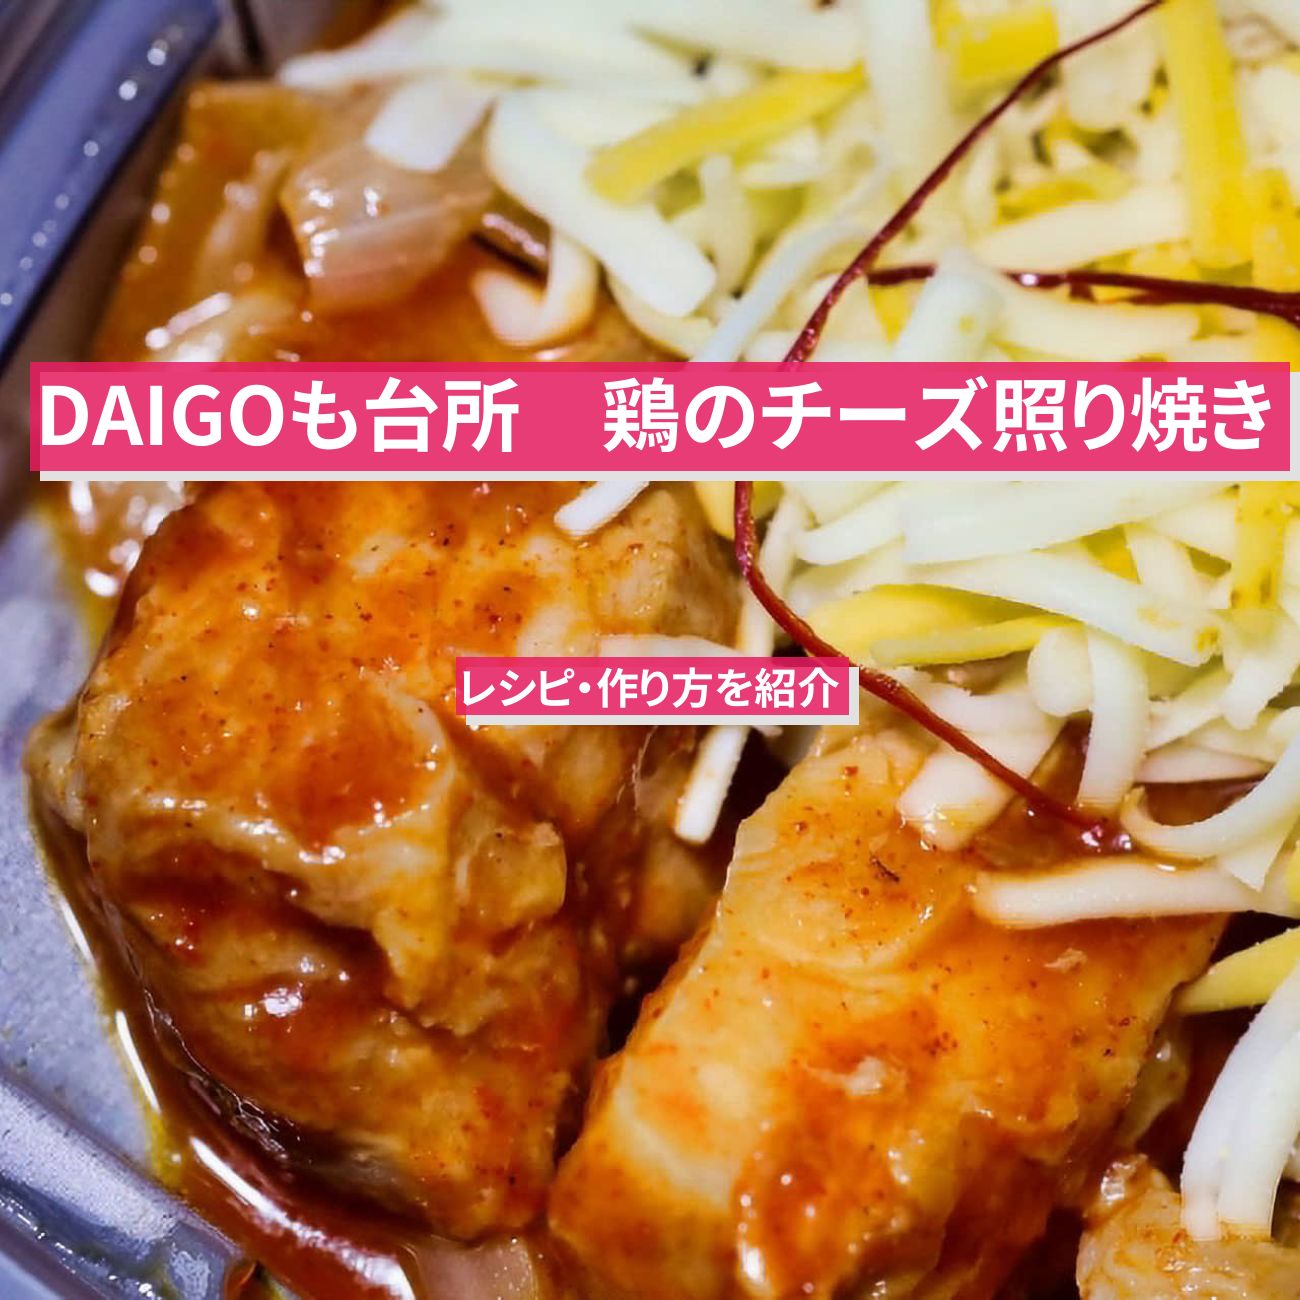 【DAIGOも台所】『鶏のチーズ照り焼き』のレシピ・作り方を紹介